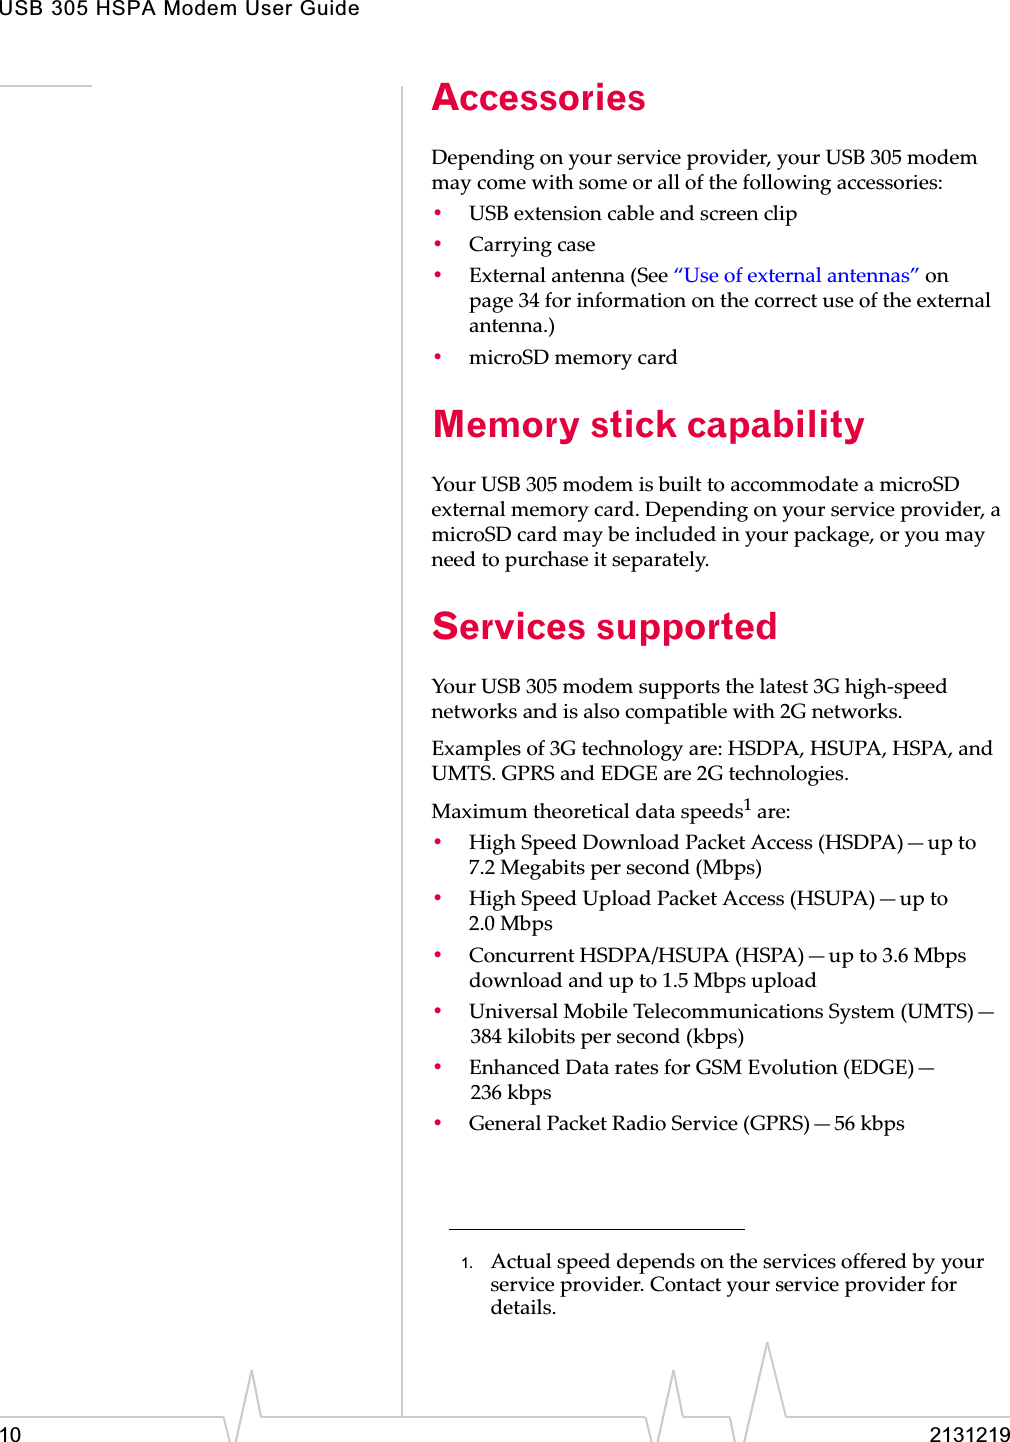 USB 305 HSPA Modem User Guide10 2131219AccessoriesDependingȱonȱyourȱserviceȱprovider,ȱyourȱUSBȱ305ȱmodemȱmayȱcomeȱwithȱsomeȱorȱallȱofȱtheȱfollowingȱaccessories:•USBȱextensionȱcableȱandȱscreenȱclip•Carryingȱcase•Externalȱantennaȱ(Seeȱ“Useȱofȱexternalȱantennas”ȱonȱpage 34ȱforȱinformationȱonȱtheȱcorrectȱuseȱofȱtheȱexternalȱantenna.)•microSDȱmemoryȱcardMemory stick capability YourȱUSBȱ305ȱmodemȱisȱbuiltȱtoȱaccommodateȱaȱmicroSDȱexternalȱmemoryȱcard.ȱDependingȱonȱyourȱserviceȱprovider,ȱaȱmicroSDȱcardȱmayȱbeȱincludedȱinȱyourȱpackage,ȱorȱyouȱmayȱneedȱtoȱpurchaseȱitȱseparately.Services supportedYourȱUSBȱ305ȱmodemȱsupportsȱtheȱlatestȱ3GȱhighȬspeedȱnetworksȱandȱisȱalsoȱcompatibleȱwithȱ2Gȱnetworks.Examplesȱofȱ3Gȱtechnologyȱare:ȱHSDPA,ȱHSUPA,ȱHSPA,ȱandȱUMTS.ȱGPRSȱandȱEDGEȱareȱ2Gȱtechnologies.Maximumȱtheoreticalȱdataȱspeeds1ȱare:•HighȱSpeedȱDownloadȱPacketȱAccessȱ(HSDPA)—upȱtoȱ7.2 Megabitsȱperȱsecondȱ(Mbps)•HighȱSpeedȱUploadȱPacketȱAccessȱ(HSUPA)—upȱtoȱ2.0 Mbps•ConcurrentȱHSDPA/HSUPAȱ(HSPA)—upȱtoȱ3.6ȱMbpsȱdownloadȱandȱupȱtoȱ1.5ȱMbpsȱupload•UniversalȱMobileȱTelecommunicationsȱSystemȱ(UMTS)—384 kilobitsȱperȱsecondȱ(kbps)•EnhancedȱDataȱratesȱforȱGSMȱEvolutionȱ(EDGE)—236 kbps•GeneralȱPacketȱRadioȱServiceȱ(GPRS)—56 kbps1. Actualȱspeedȱdependsȱonȱtheȱservicesȱofferedȱbyȱyourȱserviceȱprovider.ȱContactȱyourȱserviceȱproviderȱforȱdetails.